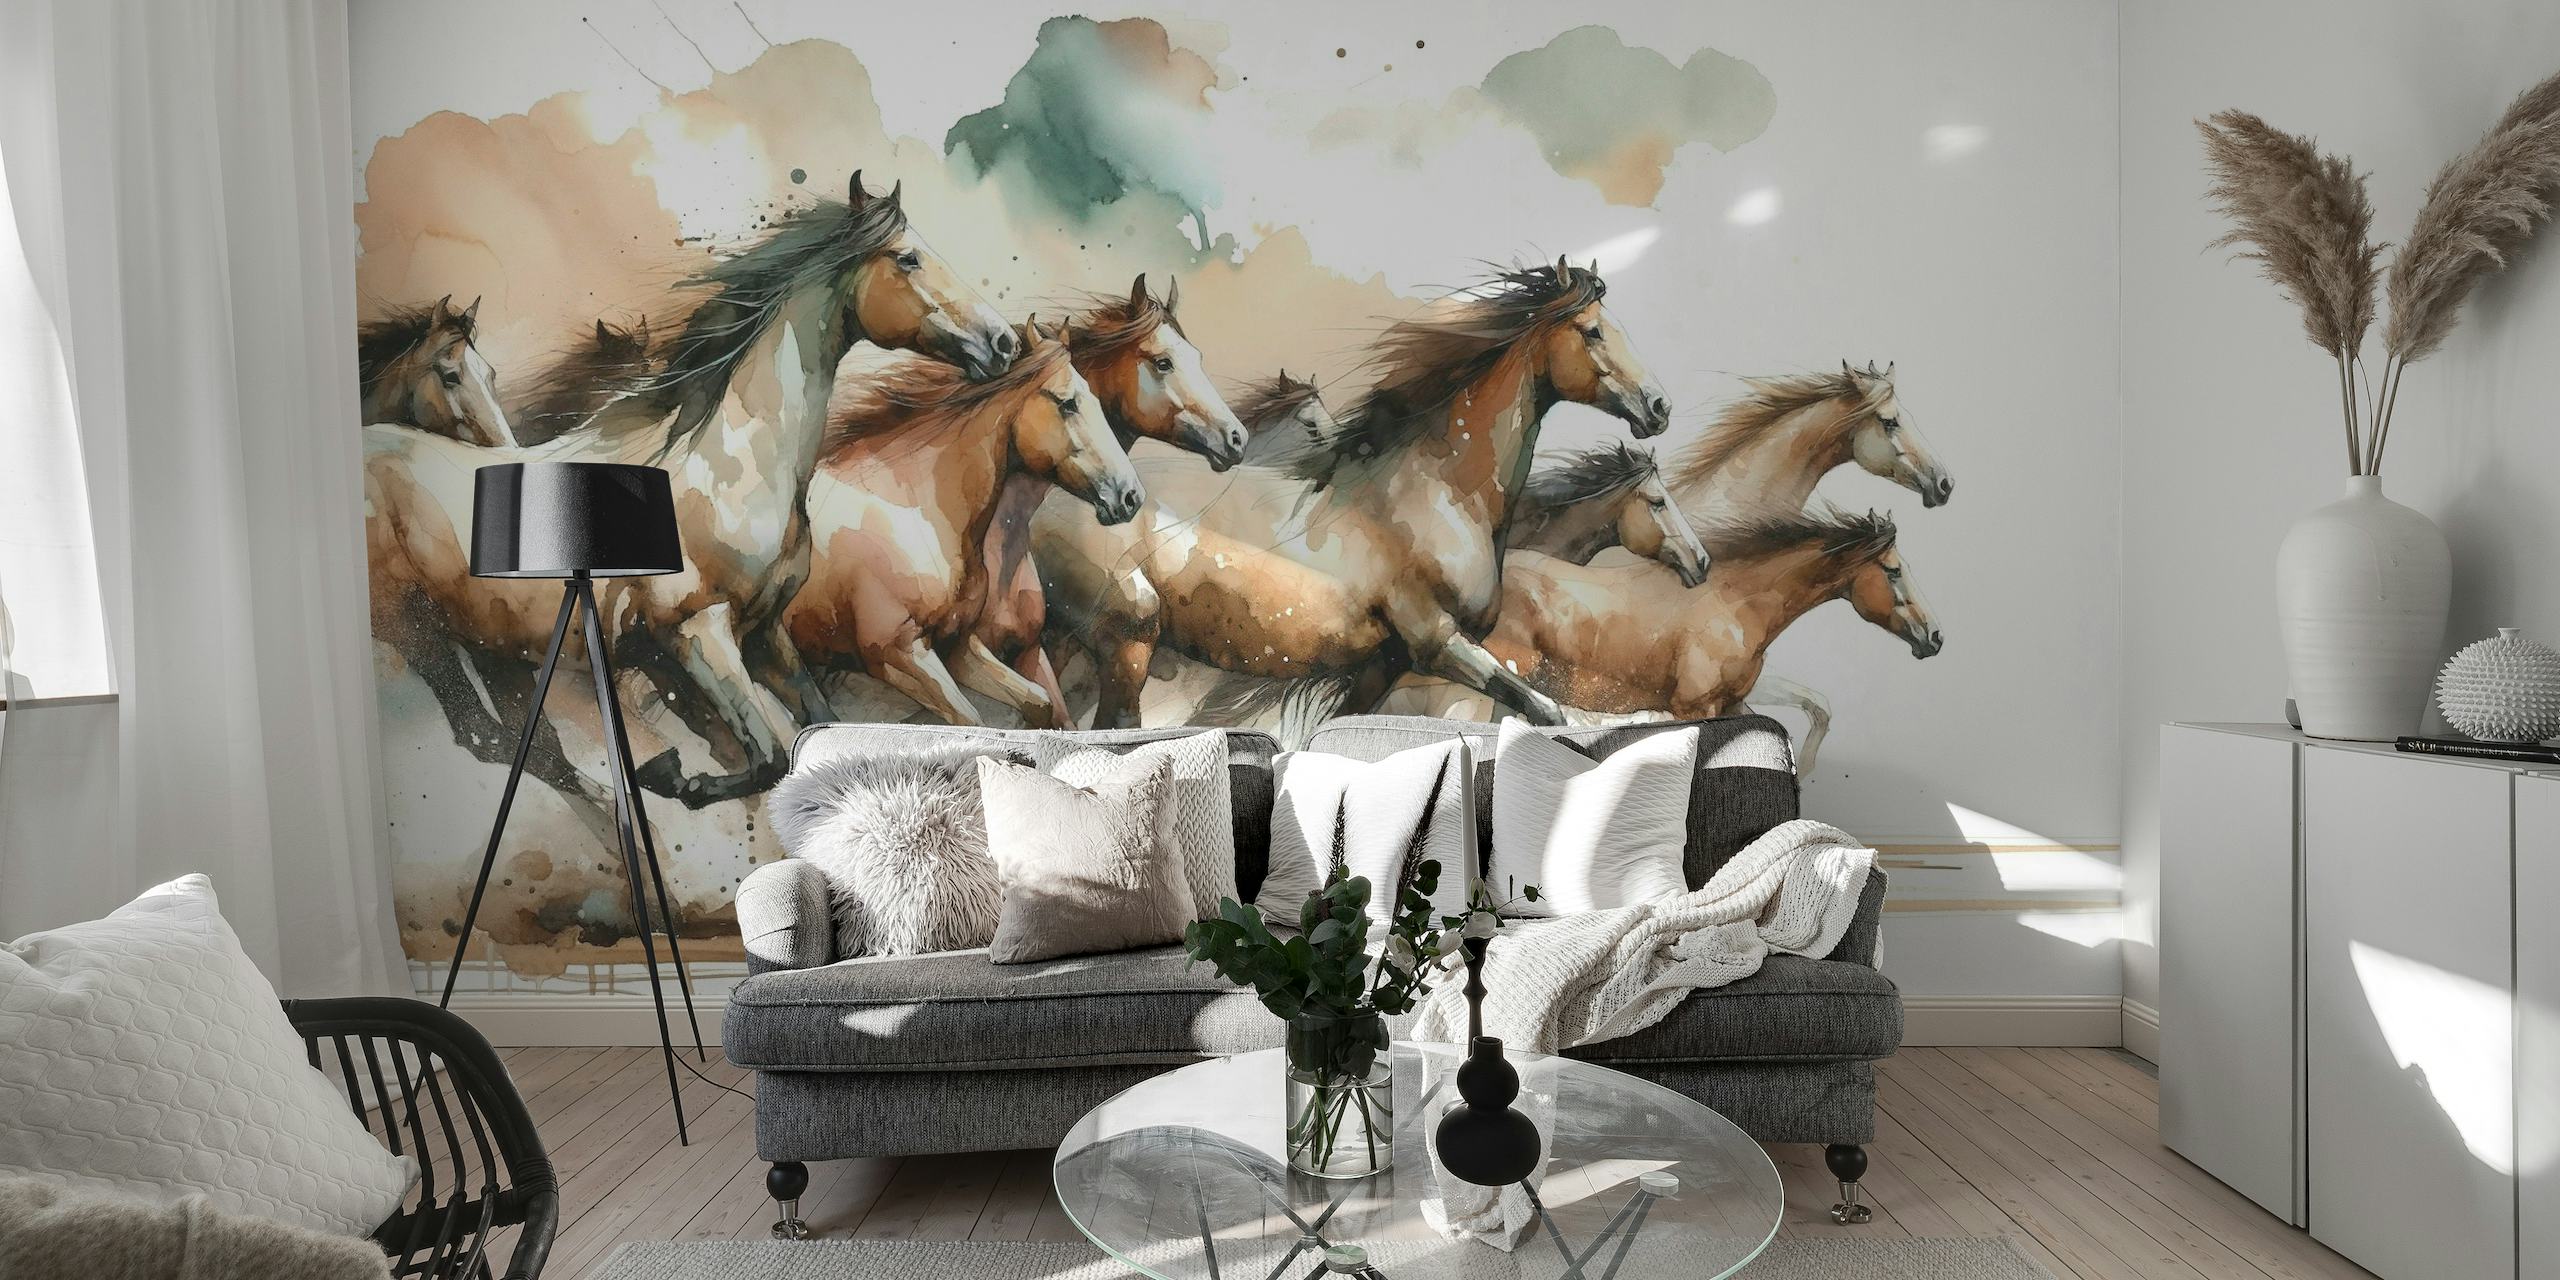 Horses Galloping papel pintado